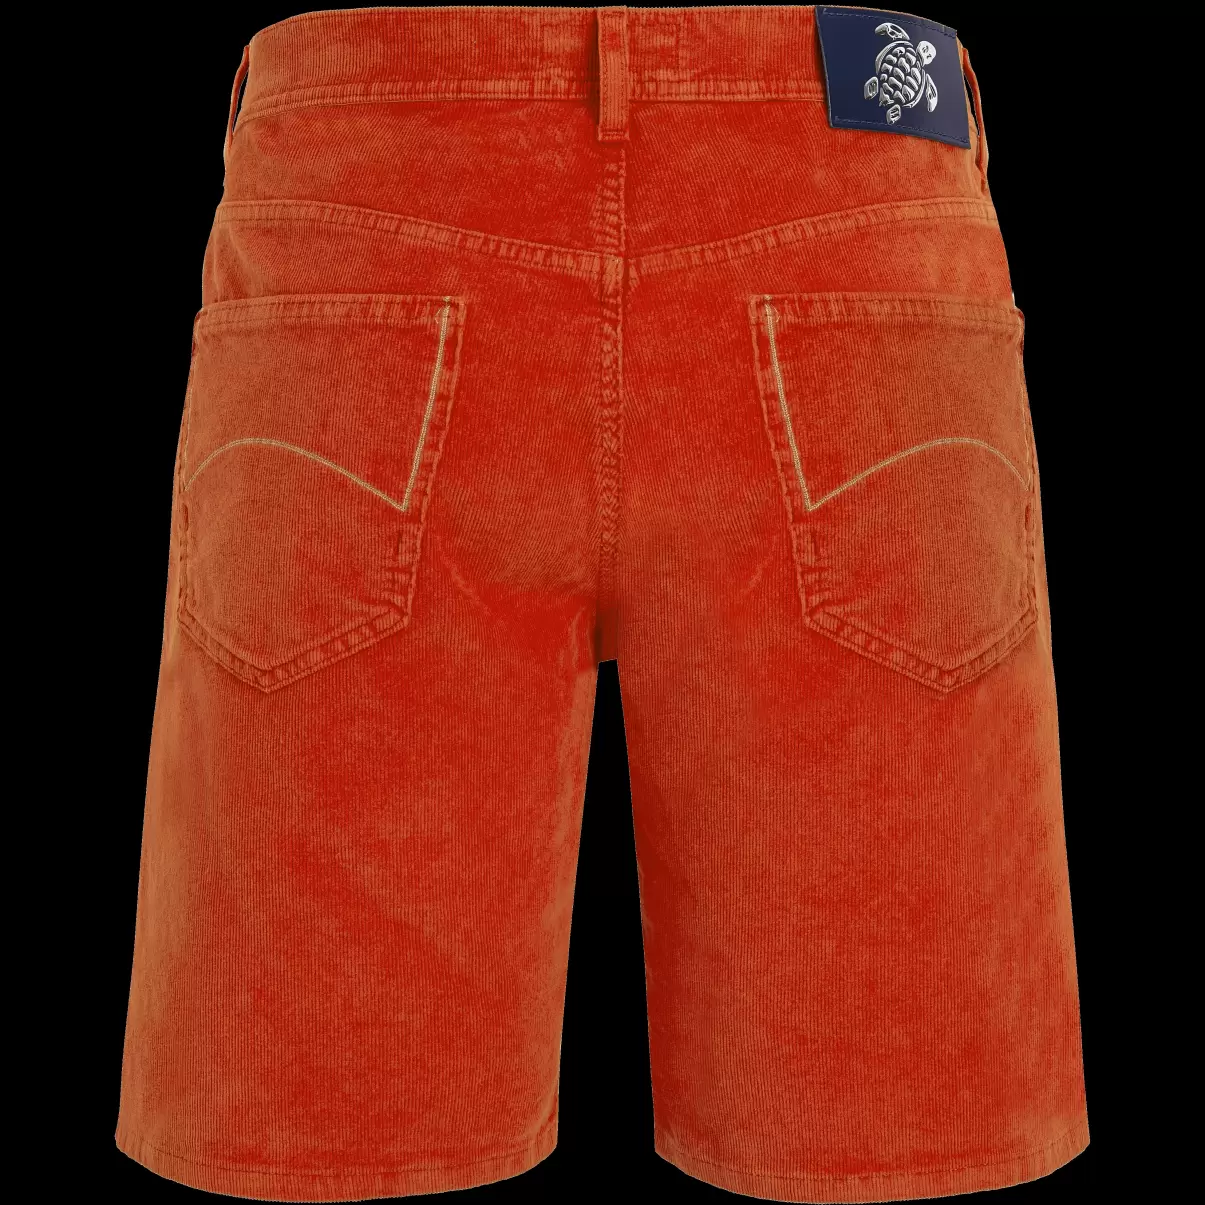 Bermudashorts Aus Cord Im 5-Taschen-Design Für Herren Tomato / Rot Rabattaktion Vilebrequin Shorts Herren - 4